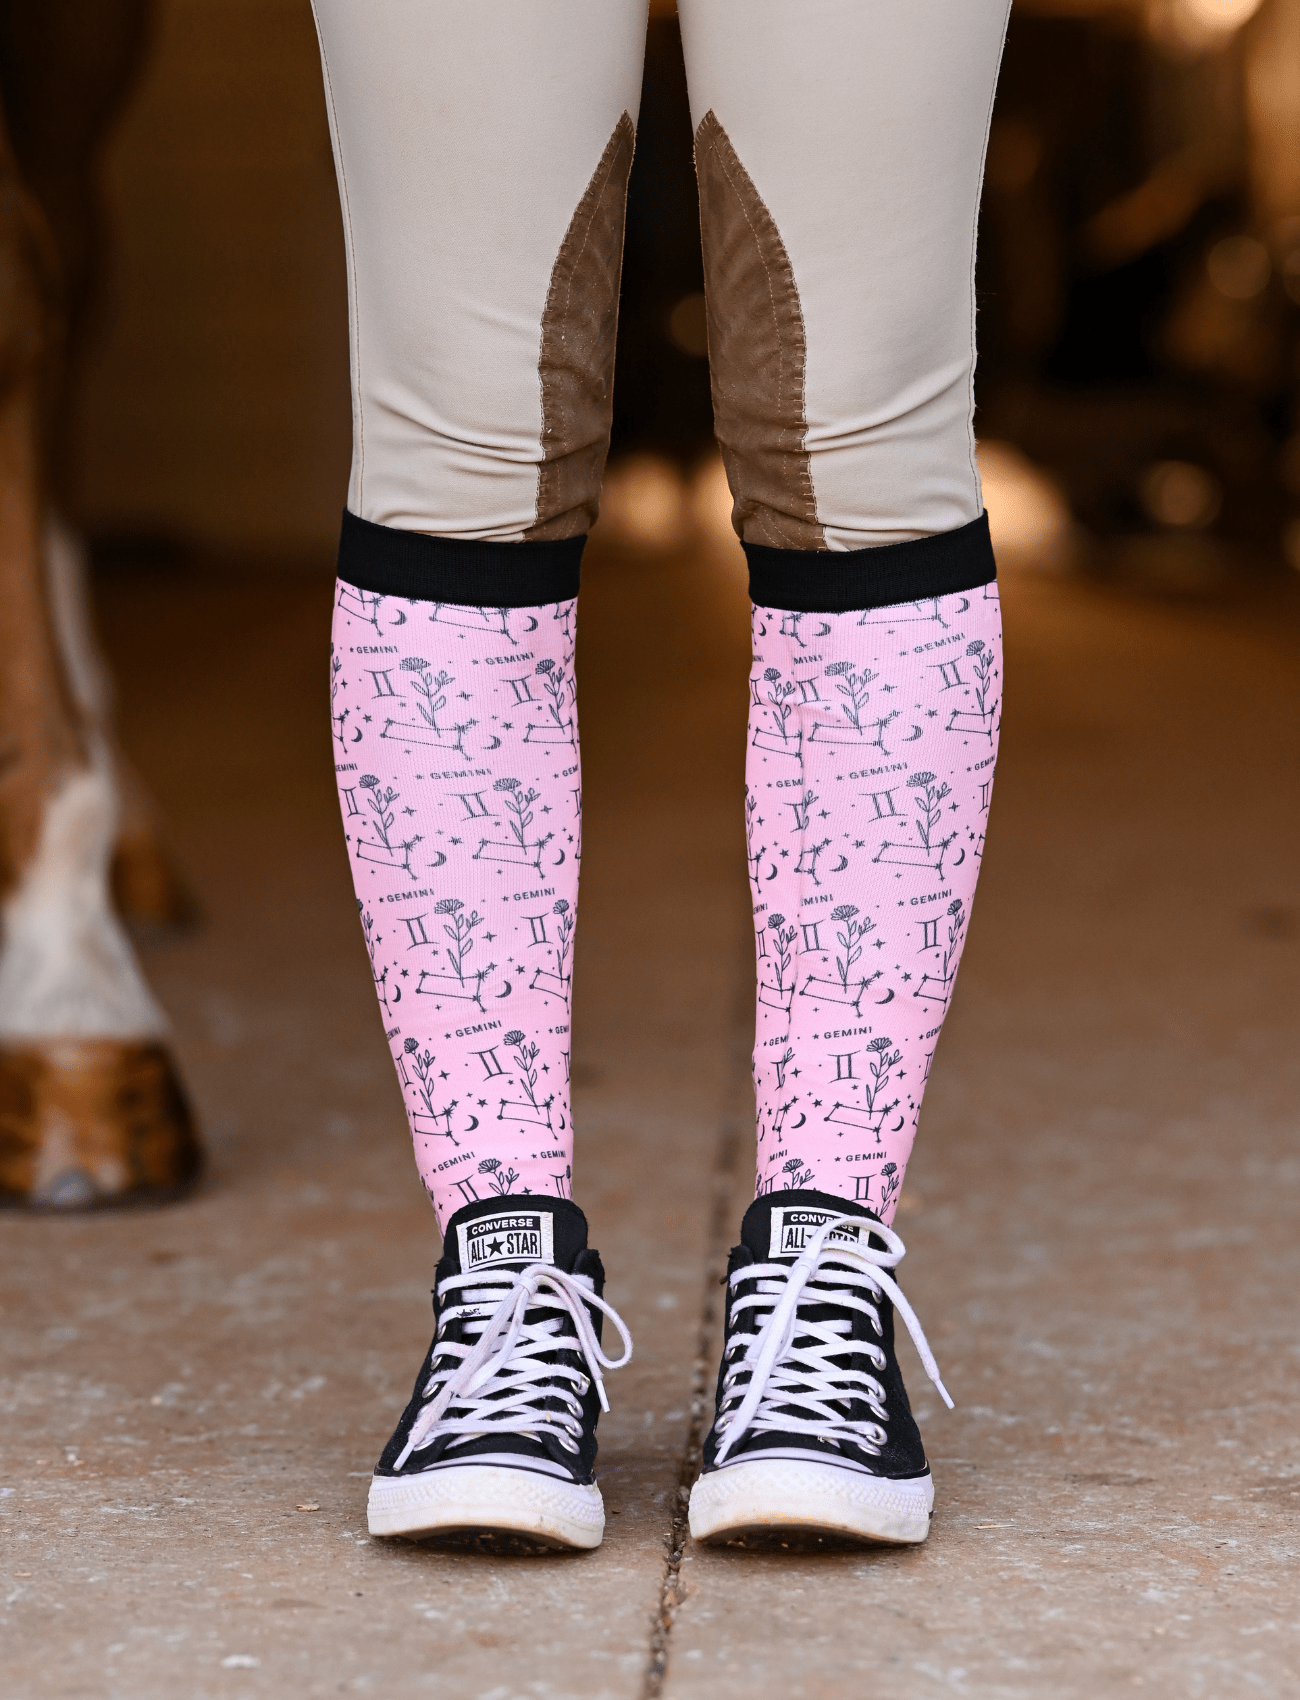 D&S LIMITED EDITION Limited Edition Limited Floral Gemini Socks equestrian boot socks boot socks thin socks riding socks pattern socks tall socks funny socks knee high socks horse socks horse show socks